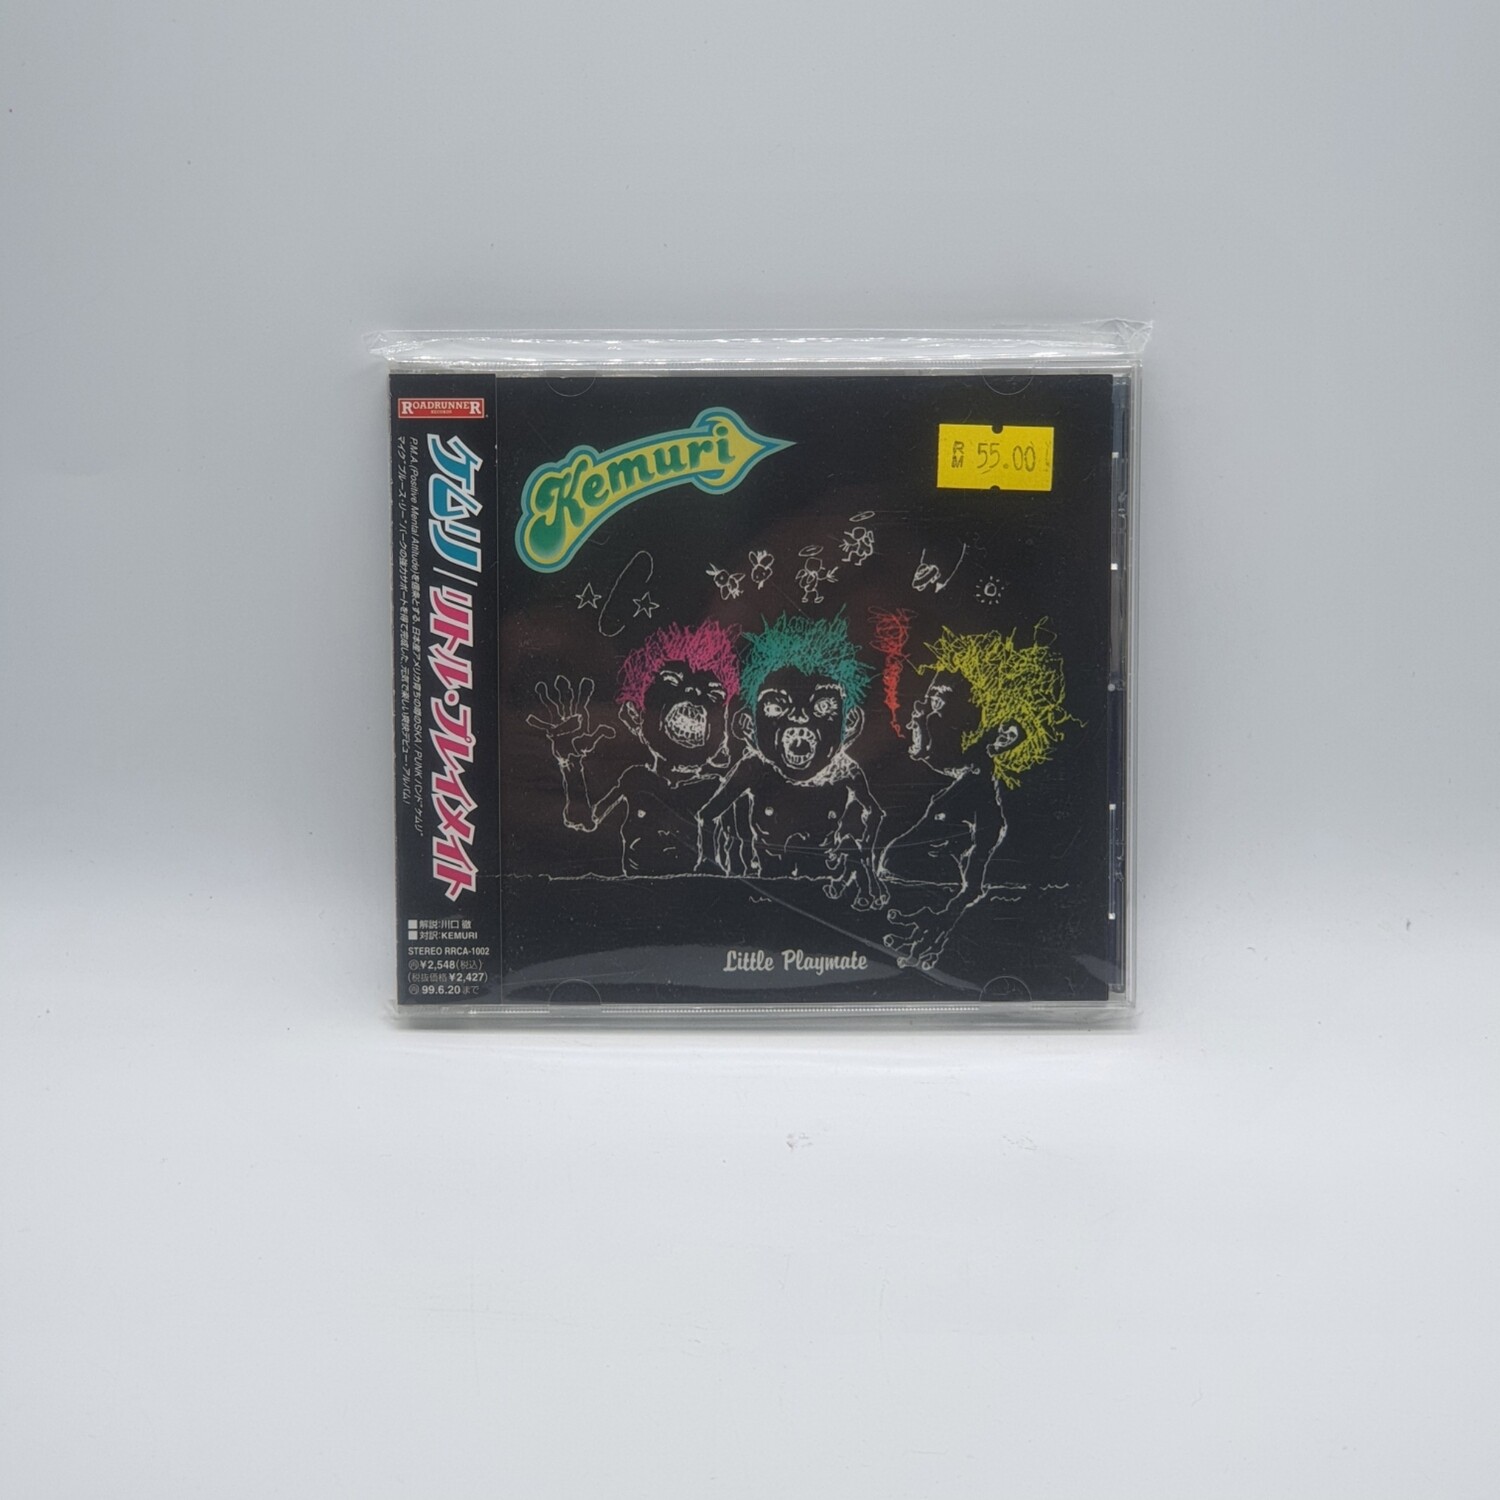 [USED] KEMURI -LITTLE PLAYMATE- CD (JAPAN PRESS)